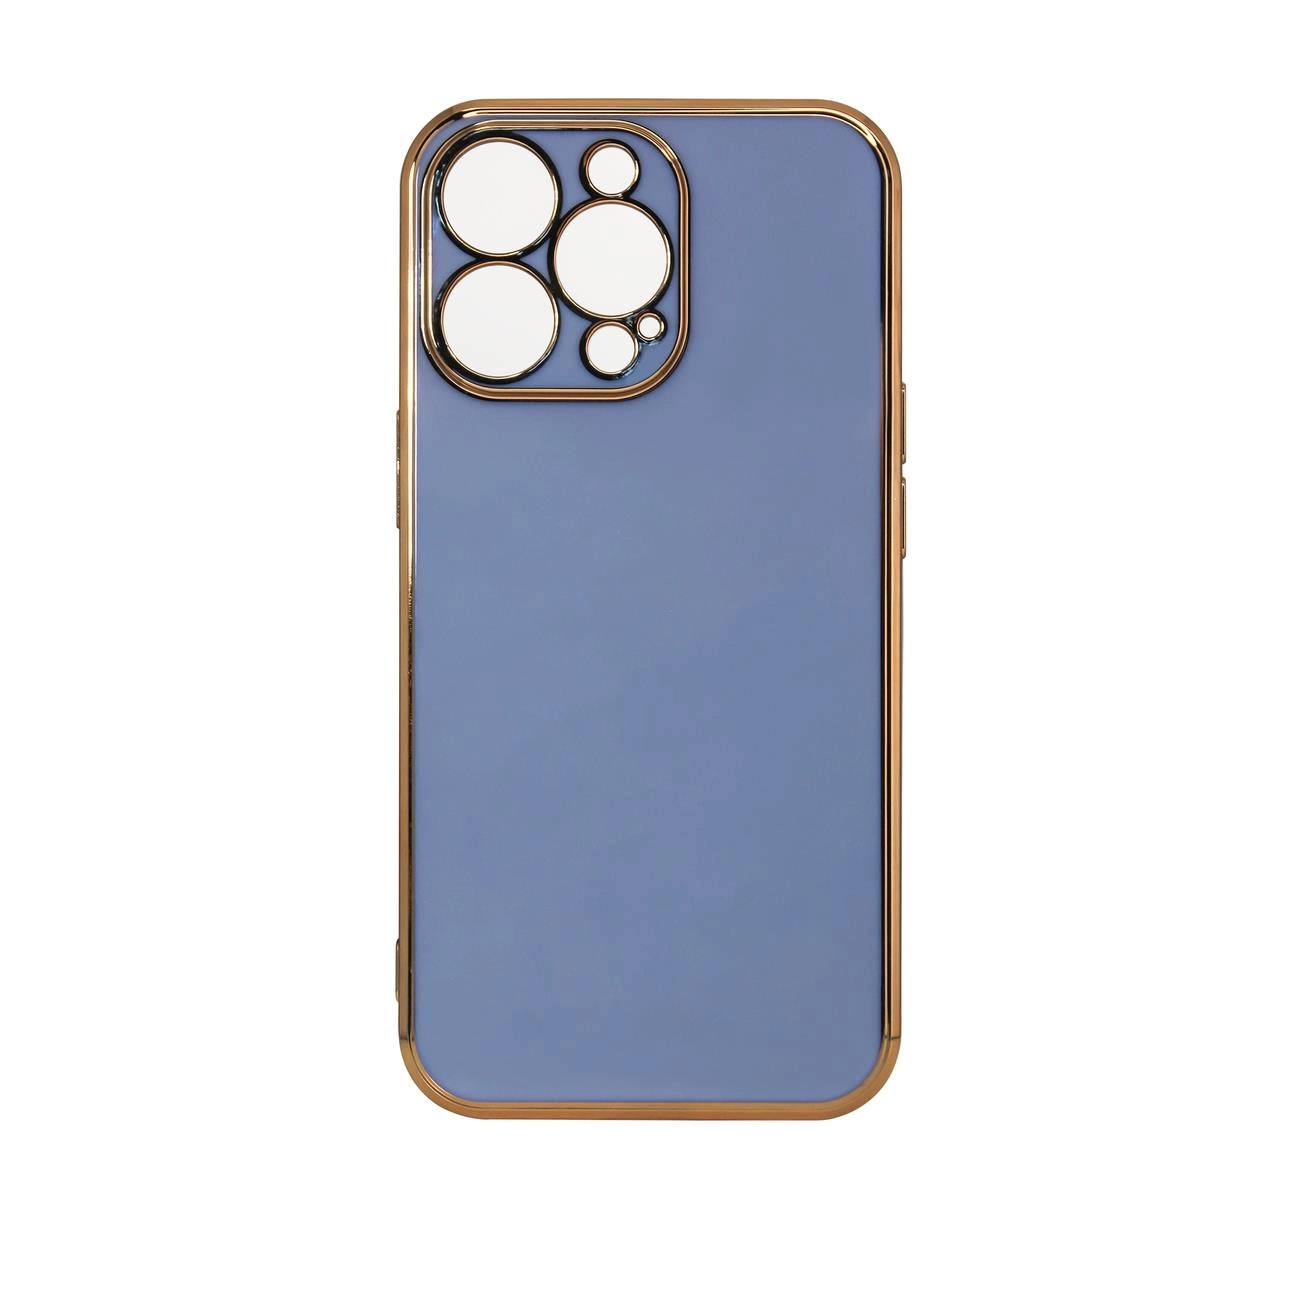 Hurtel Pouzdro Lighting Color pro iPhone 12 Pro Max gelové pouzdro se zlatým rámečkem modré barvy